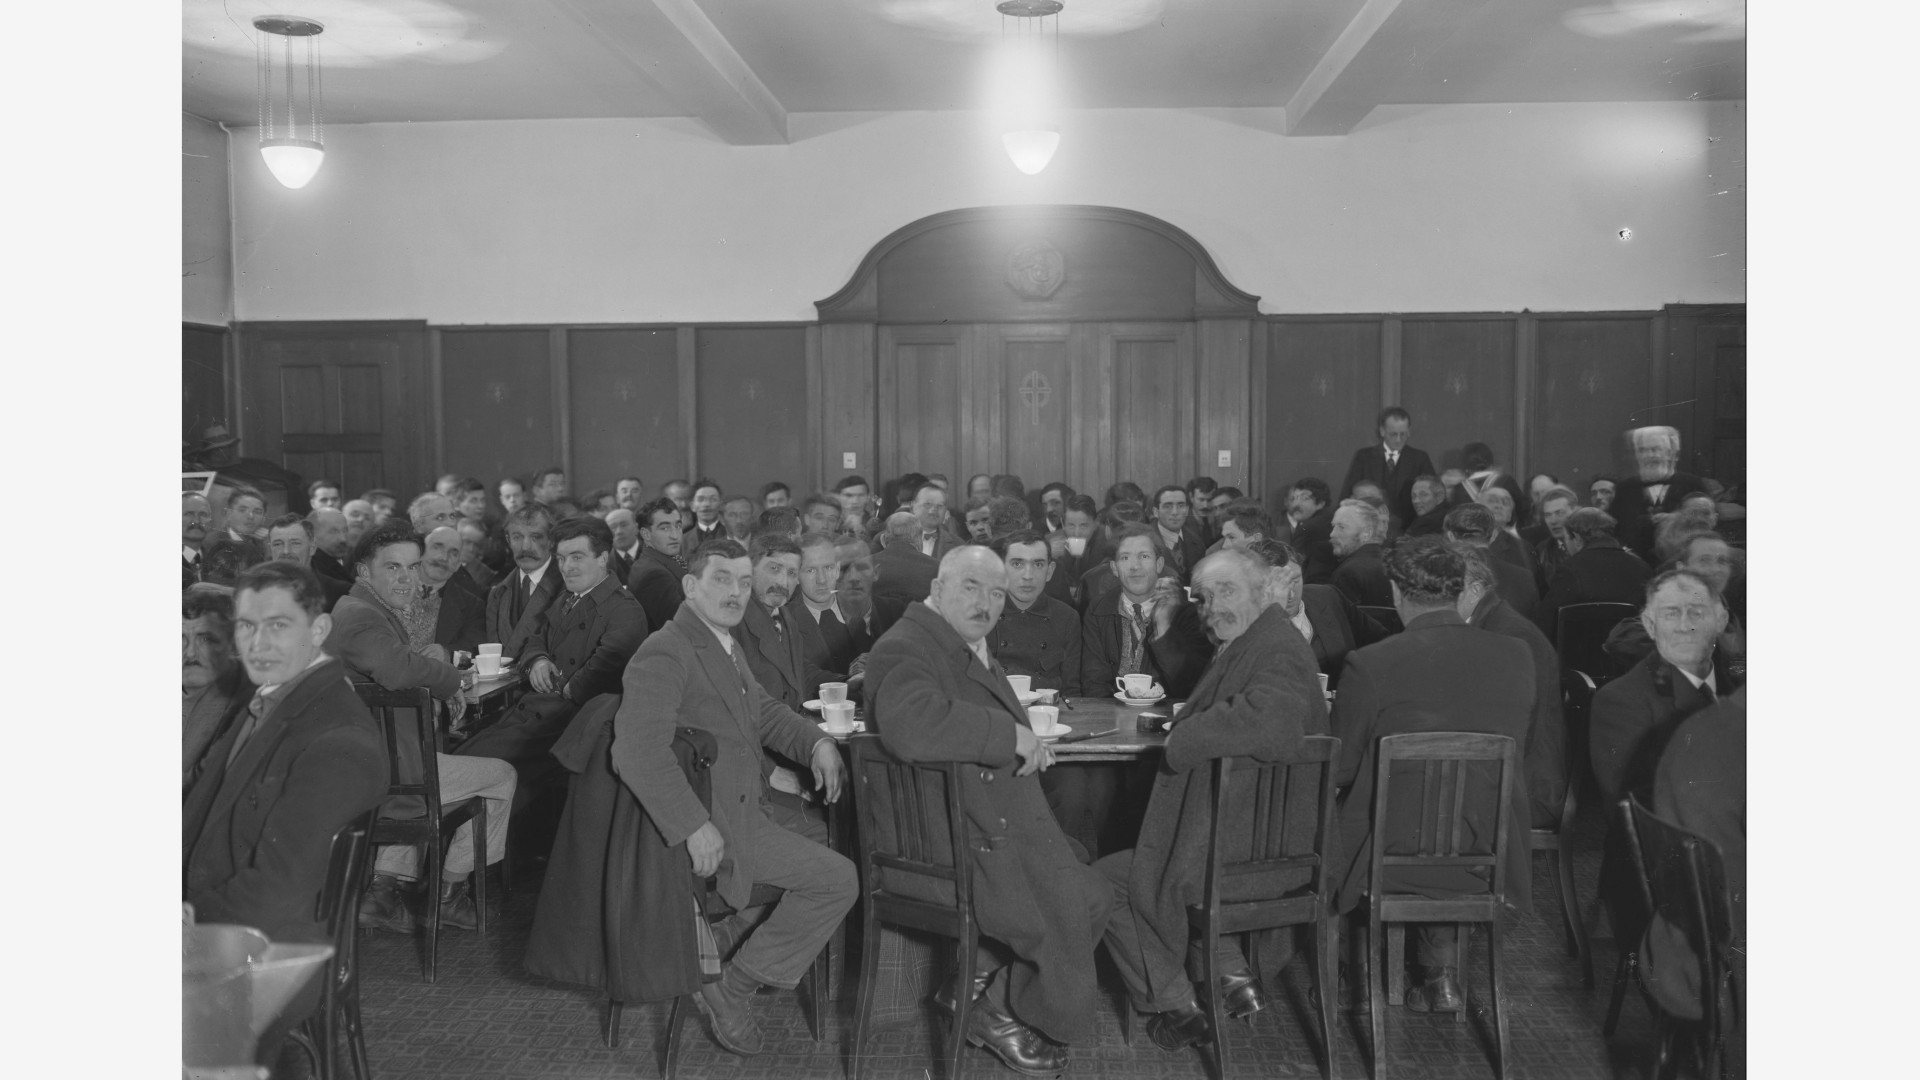 Gruppe im Eingangsbereich, Treppenhaus des Glockenhofs. ca. 1935